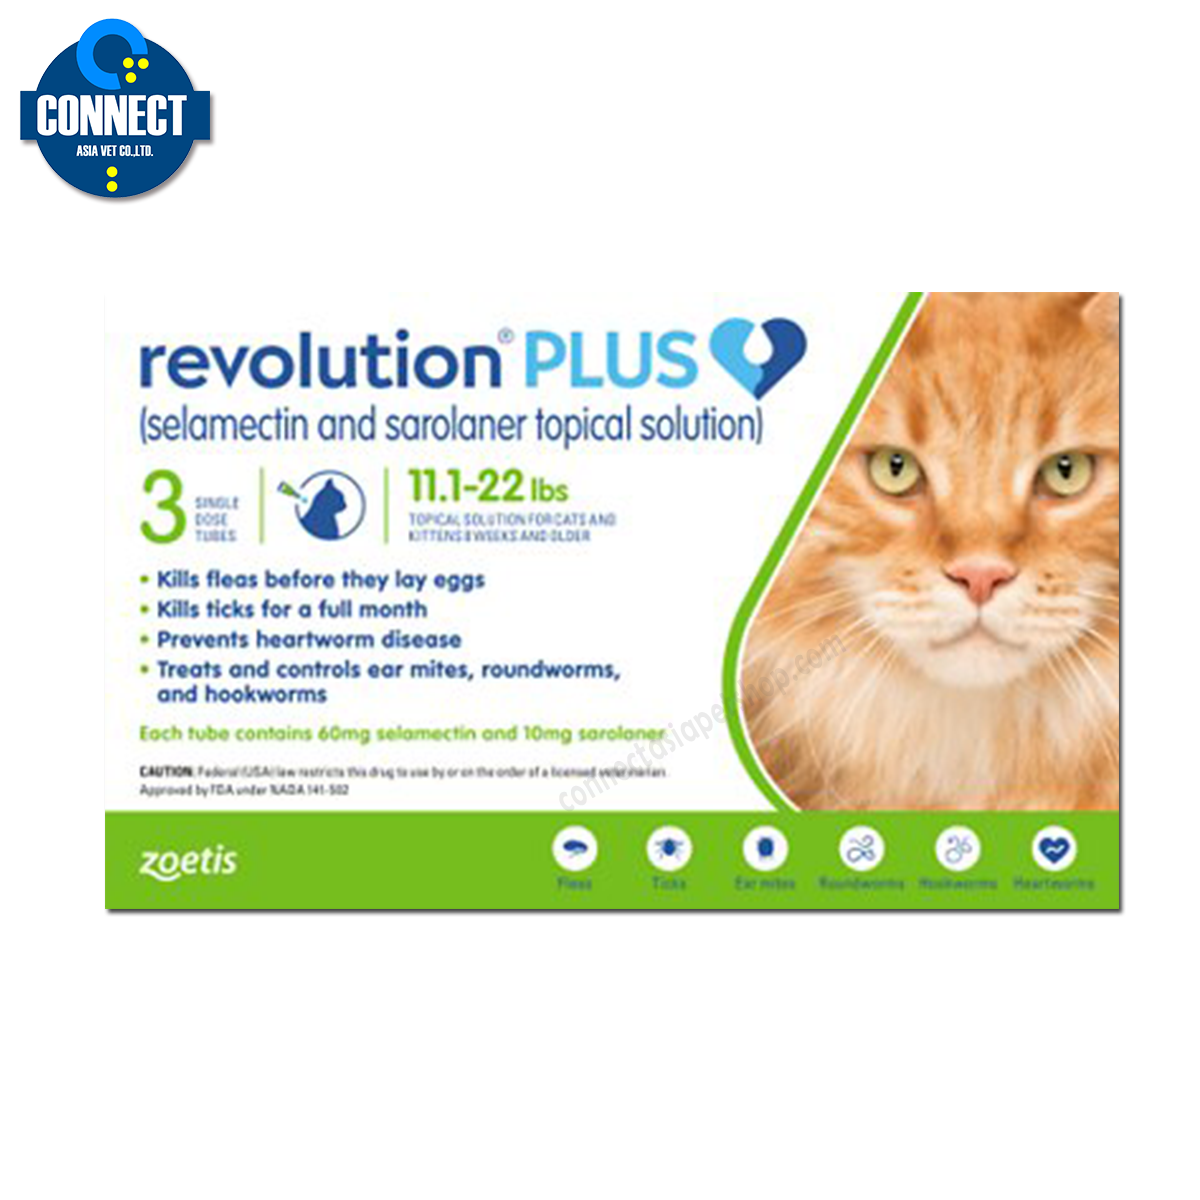 Revolutionpluscat เรฟโว ลูชั่น พลัส กำจัด เห็บ หมัด เหา แมว น้ำหนัก 5.0-10.0 กก.( 1 กล่อง มี 3 หลอด )